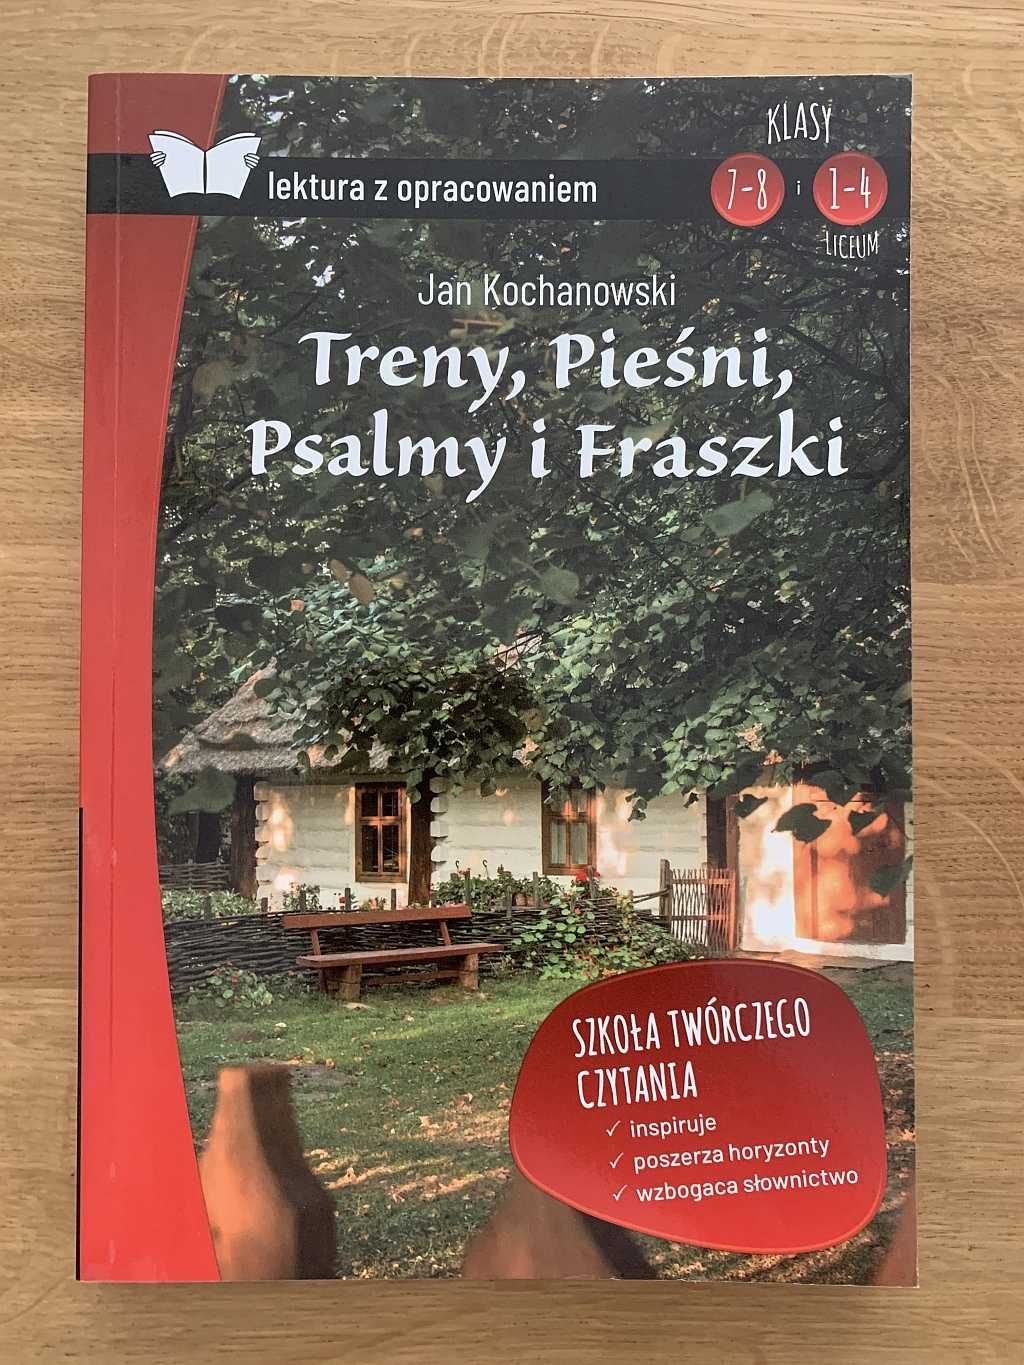 Jan Kochanowski - Treny, Pieśni, Psalmy i Fraszki